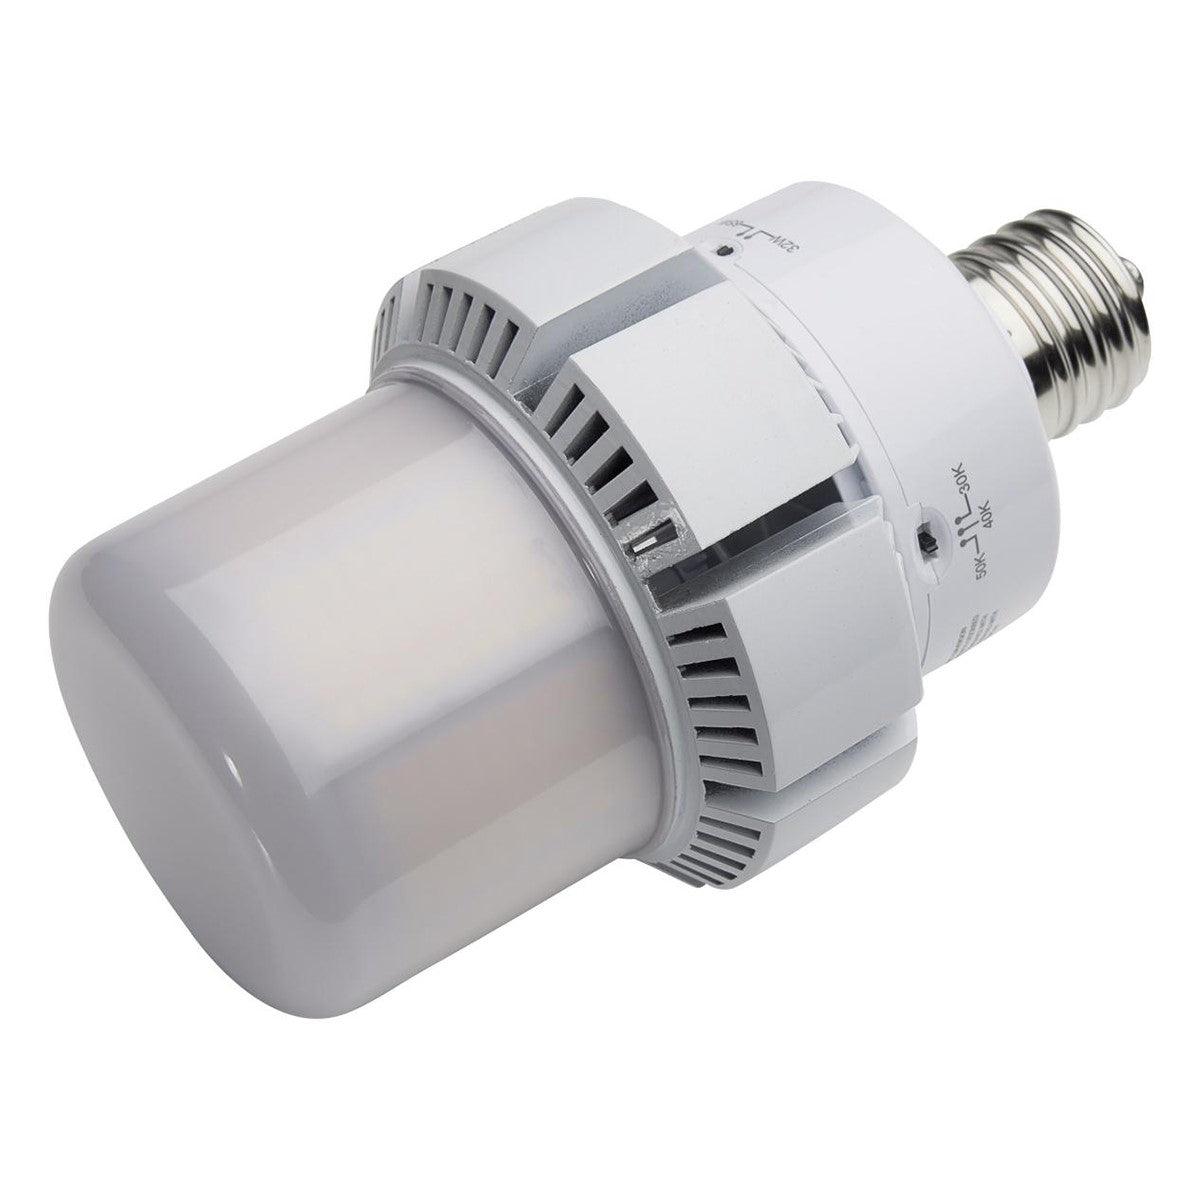 Retrofit LED Corn Bulb, 65W, 8450 Lumens, Selectable CCT, 30K/40K/50K, E39 Mogul Base, 120-277V - Bees Lighting